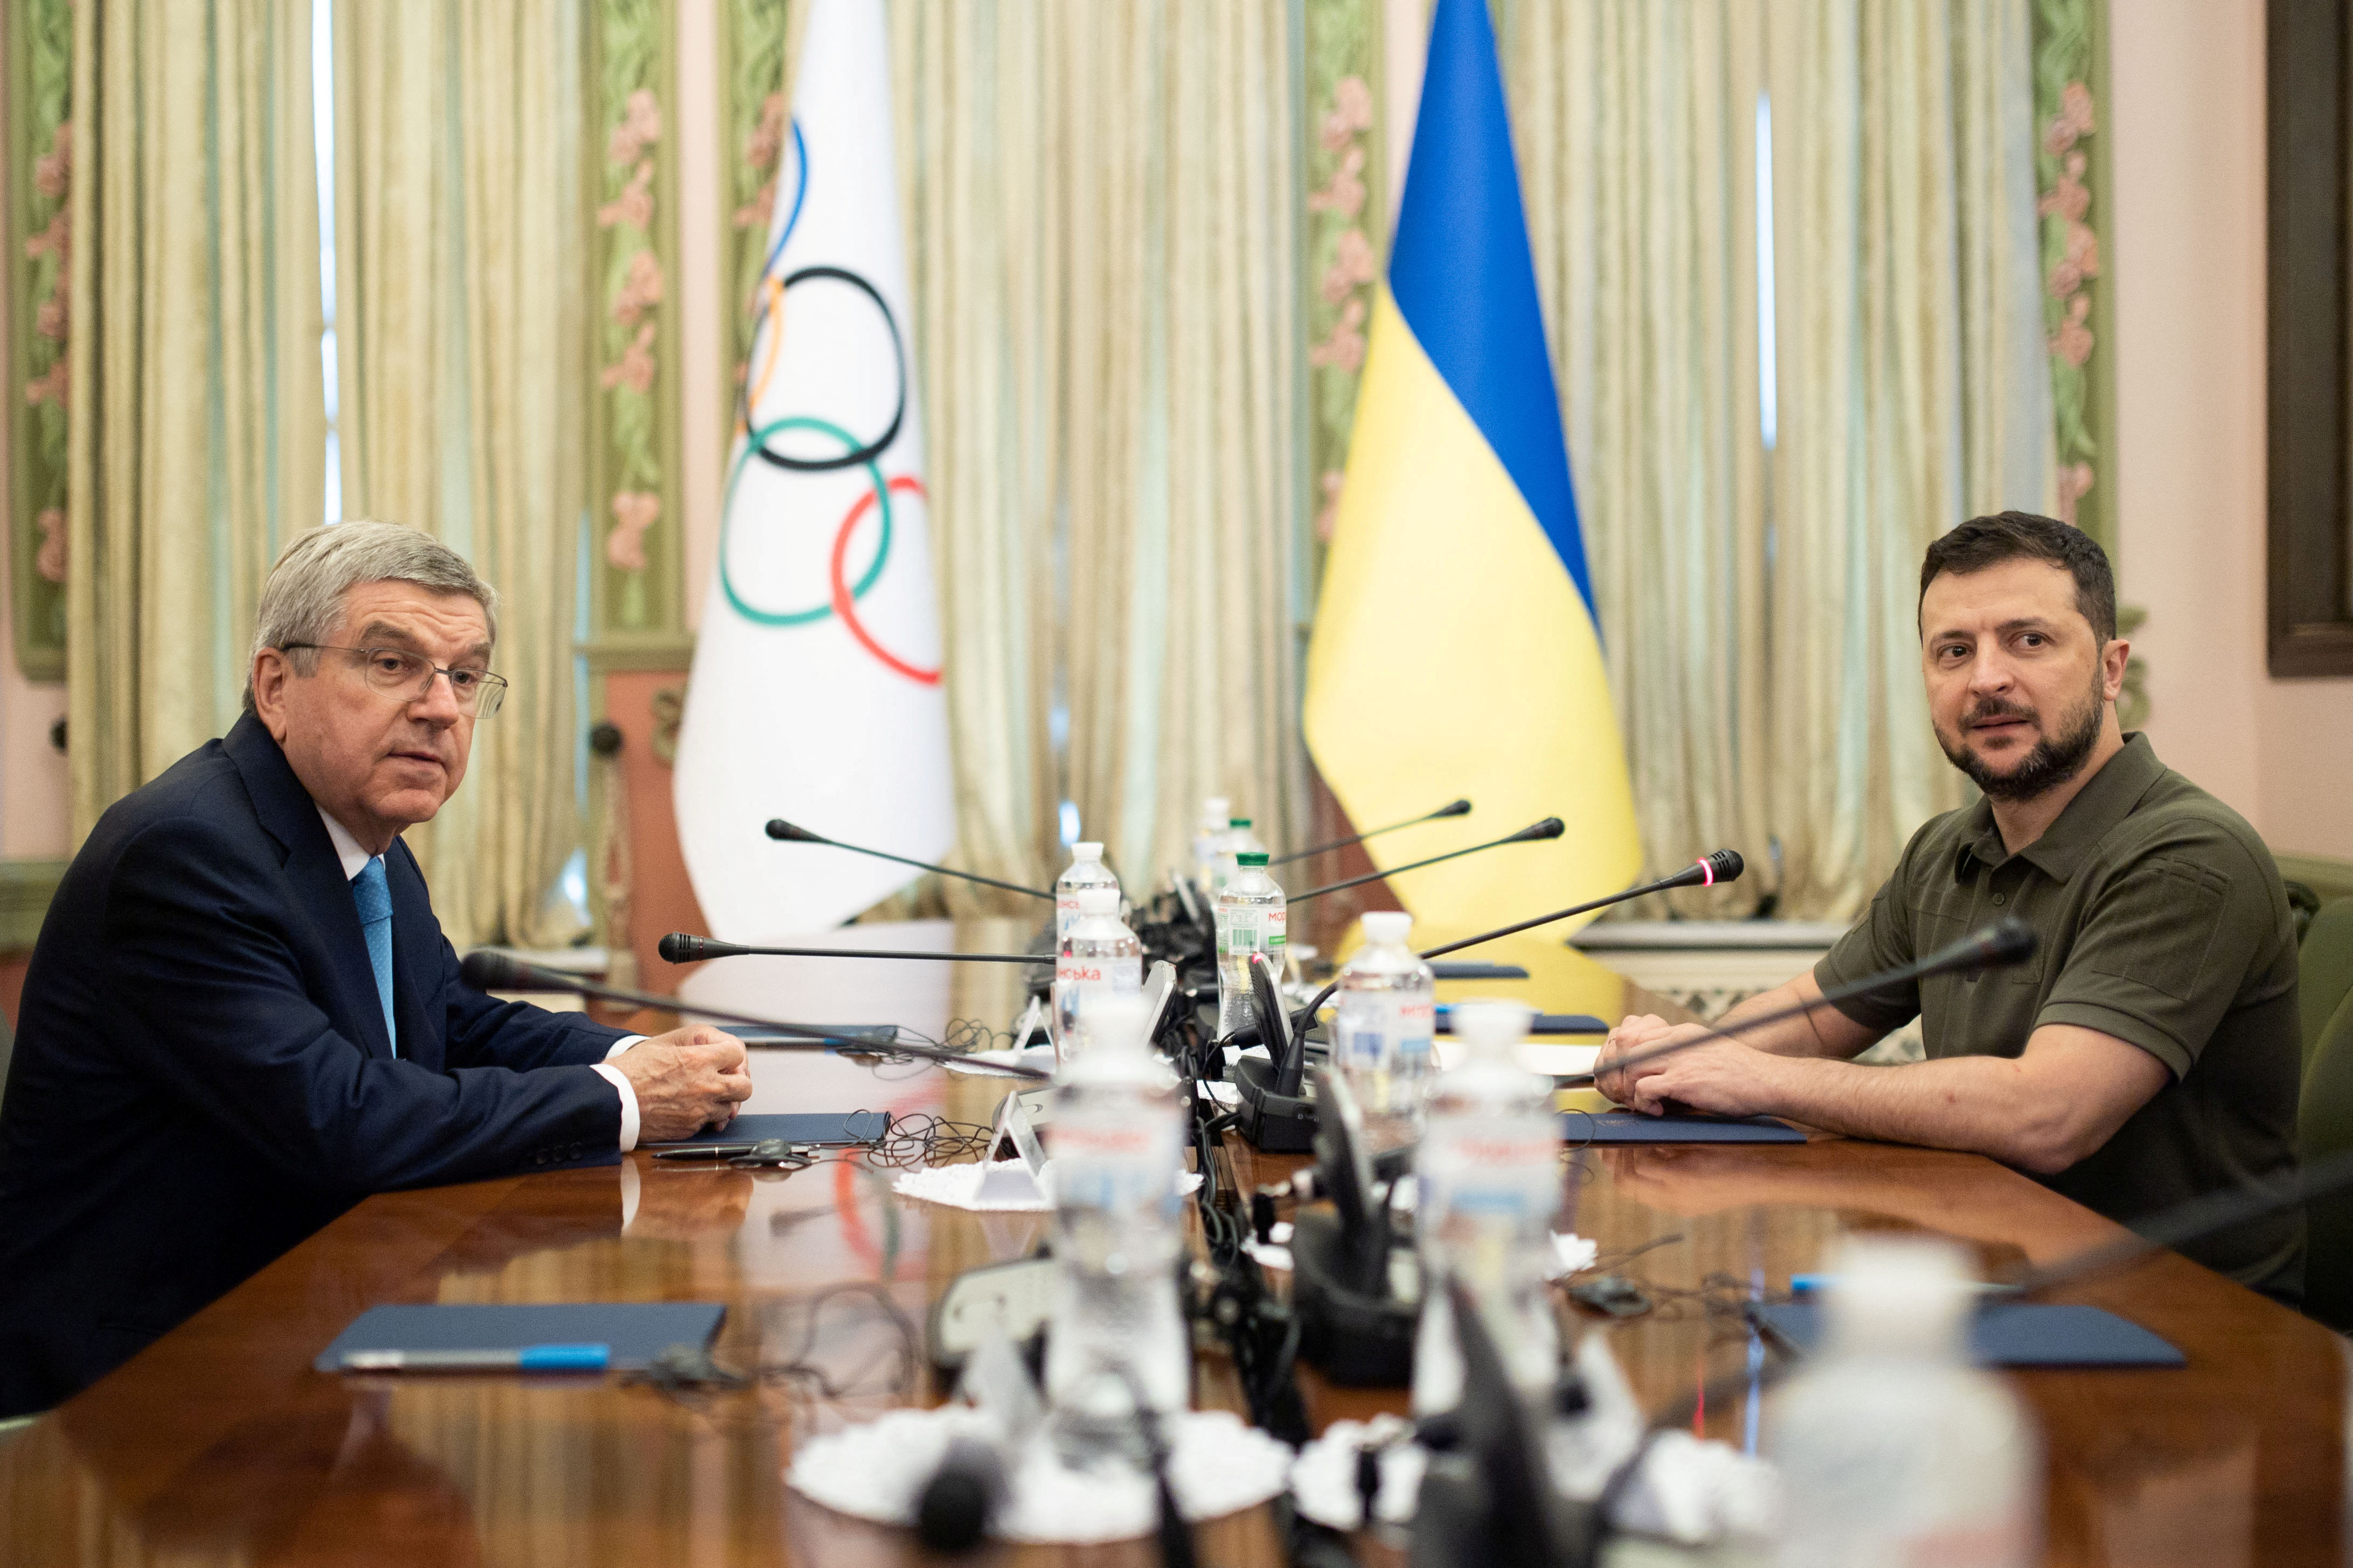 El presidente ucraniano Zelenski y el presidente del COI, Bach, asisten a una reunión en Kiev